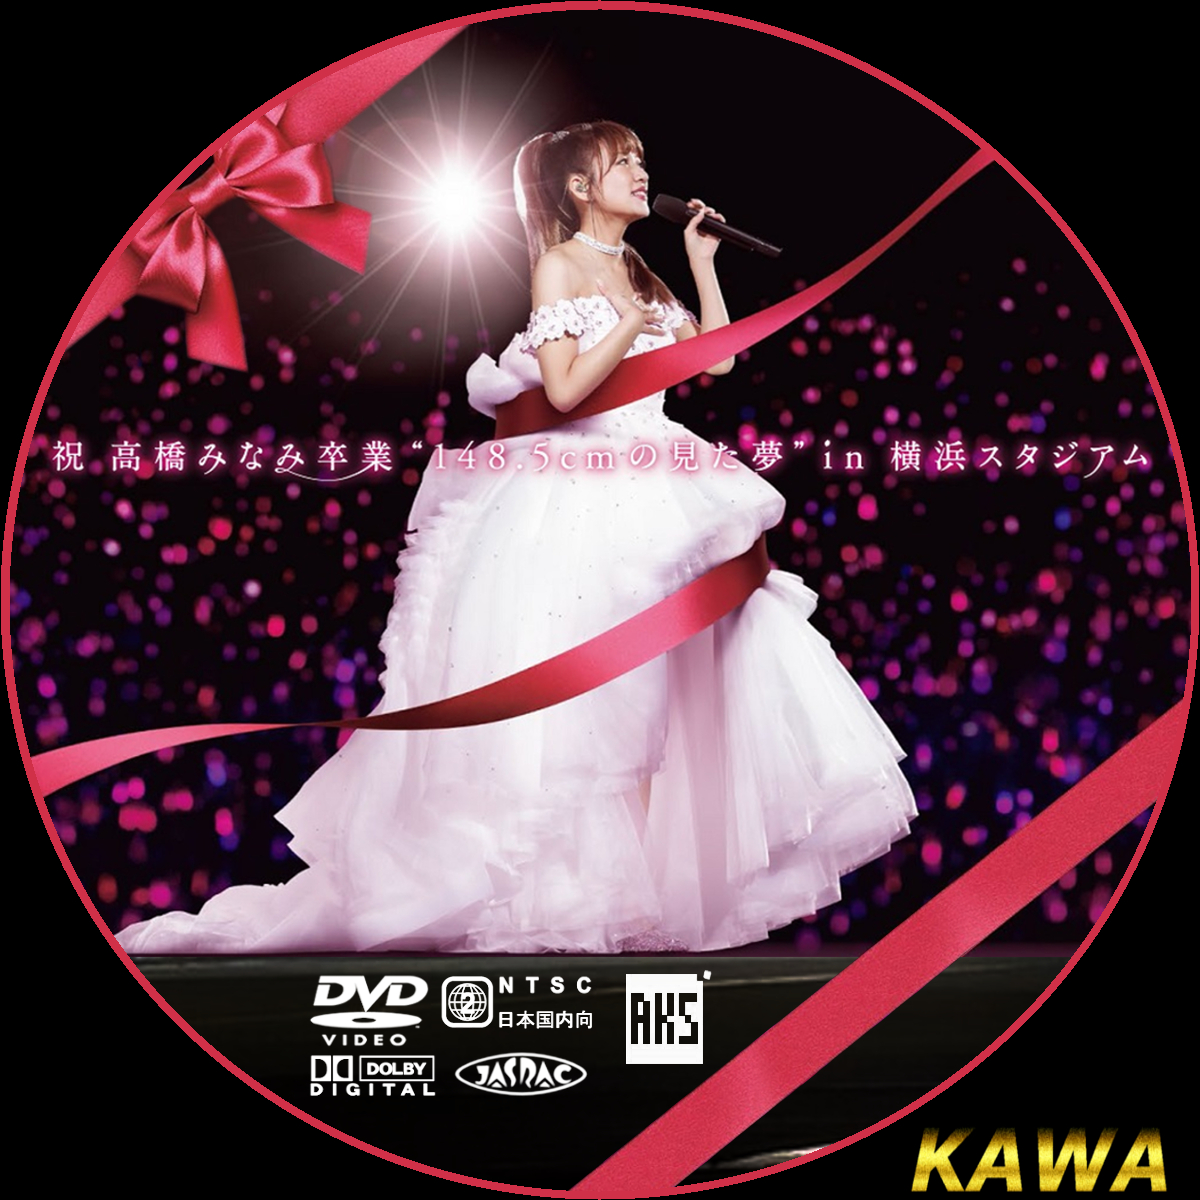 祝 高橋みなみ卒業“148.5cmの見た夢"in 横浜スタジアム(DVD) 2zzhgl6